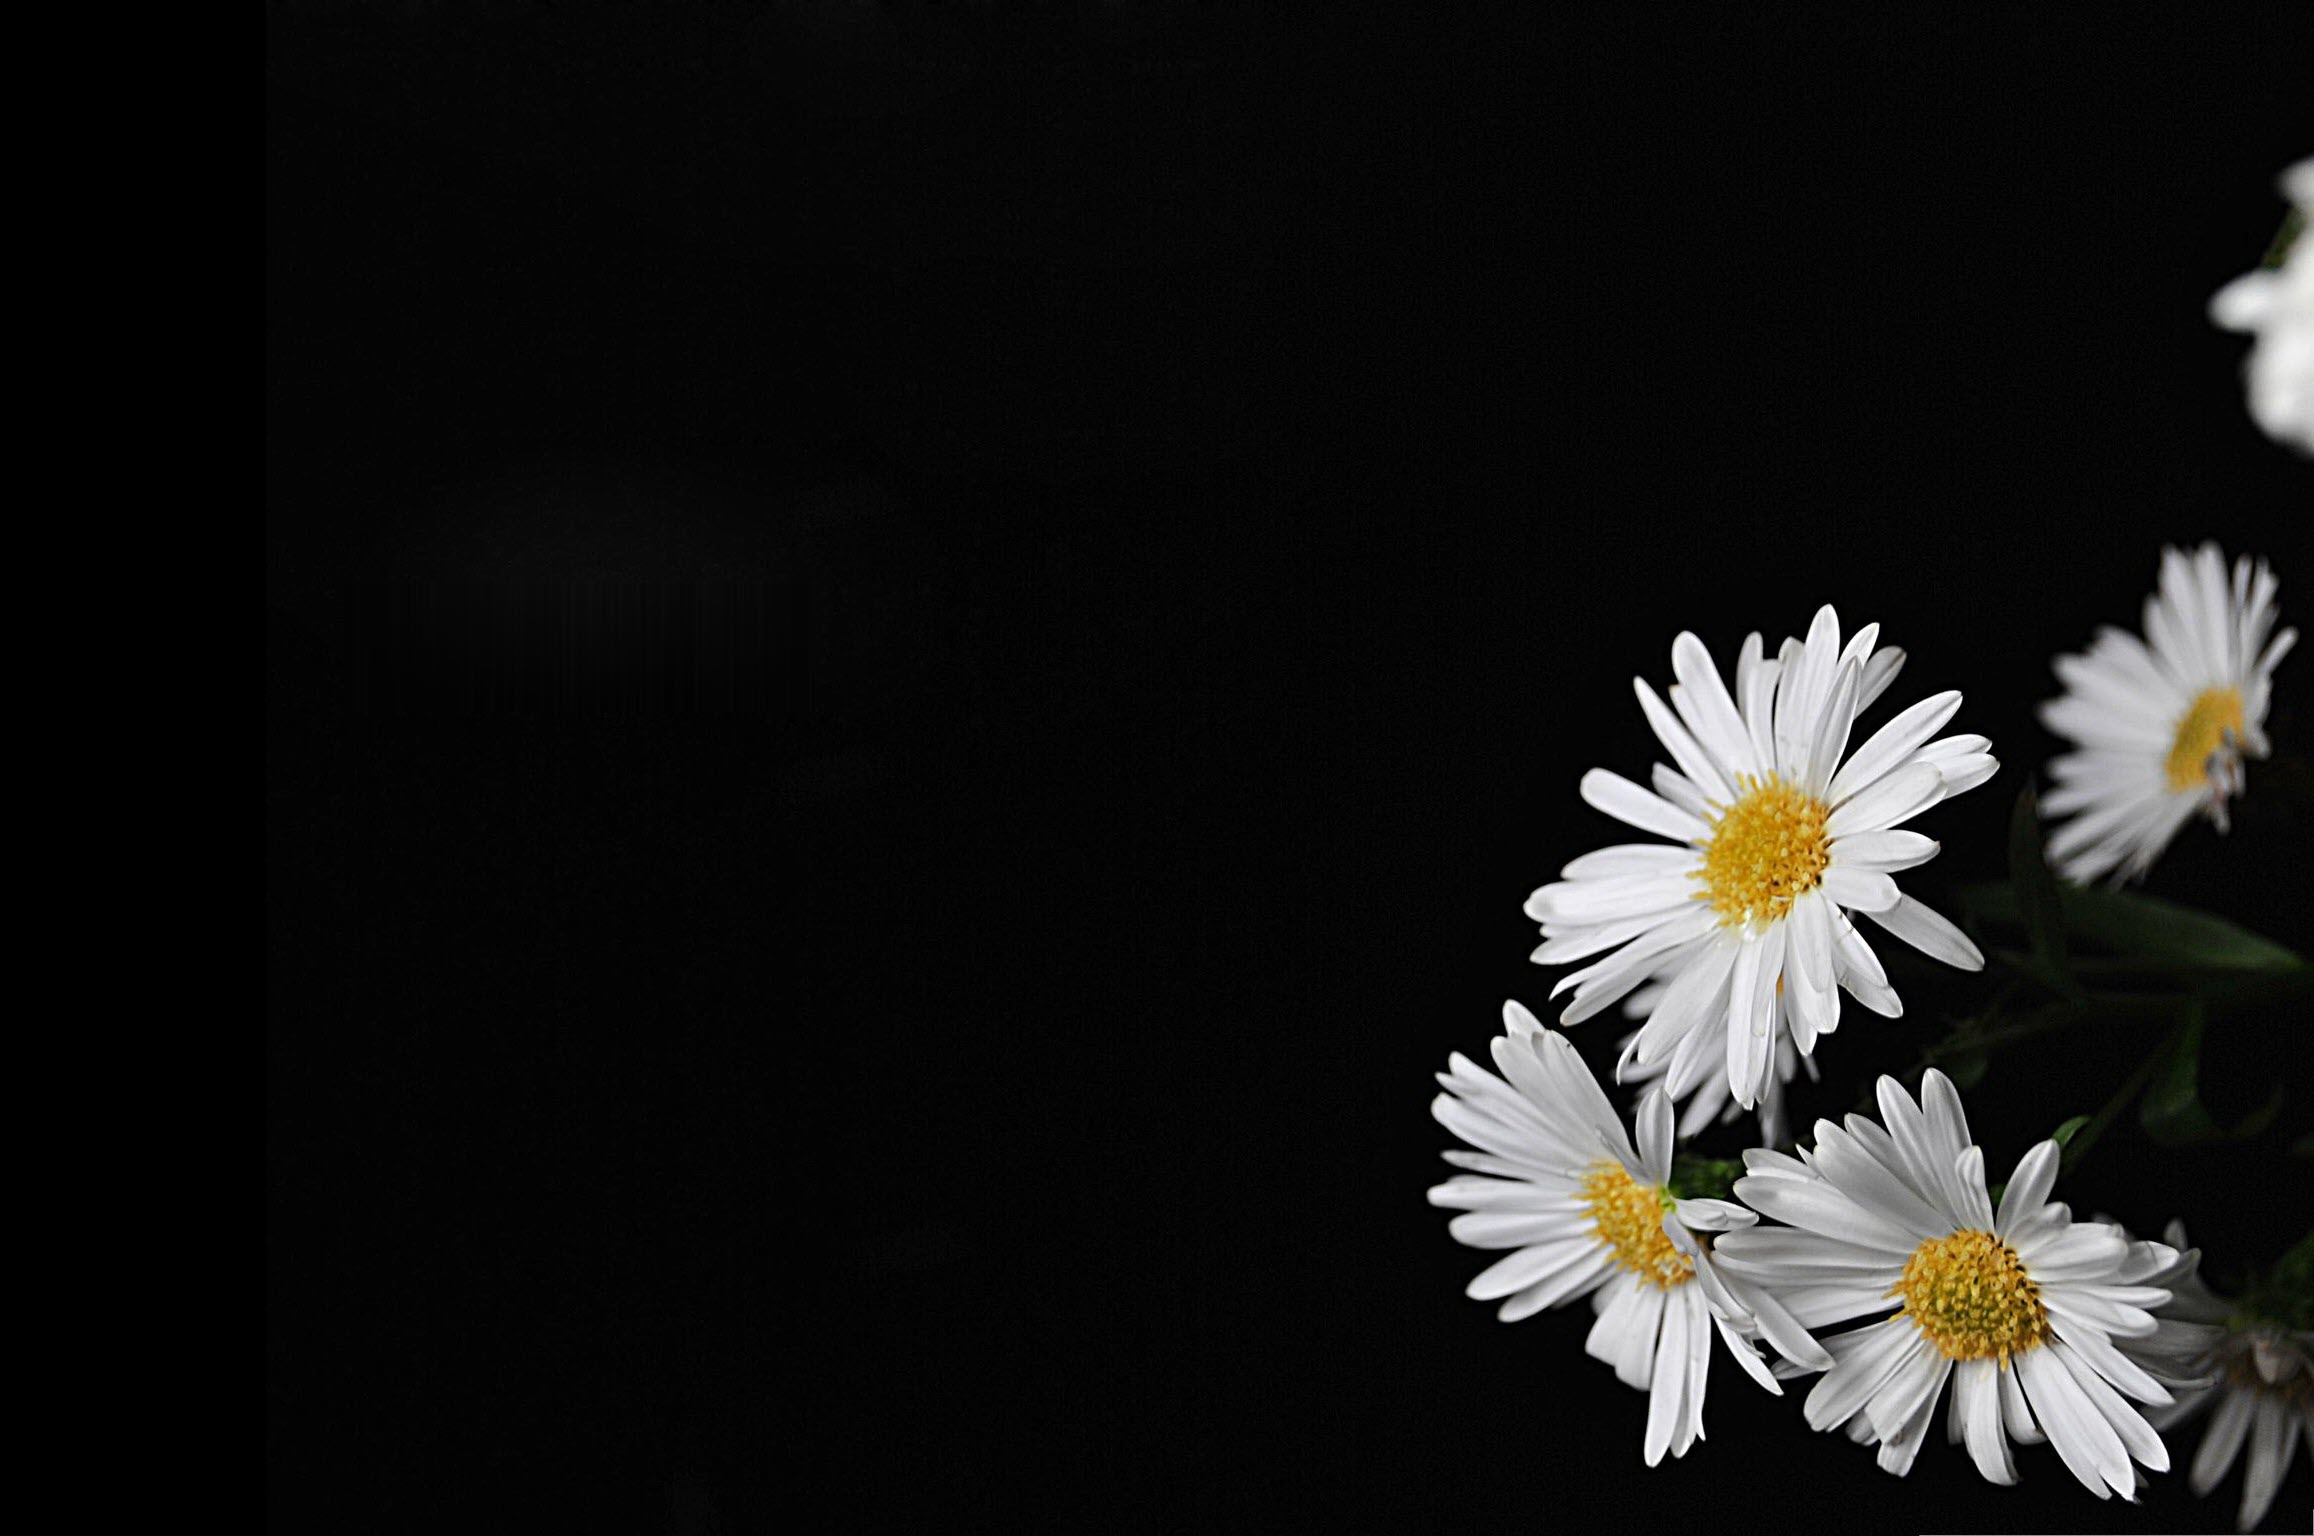 Hình ảnh hoa cúc trắng nền đen đẹp tuyệt vời